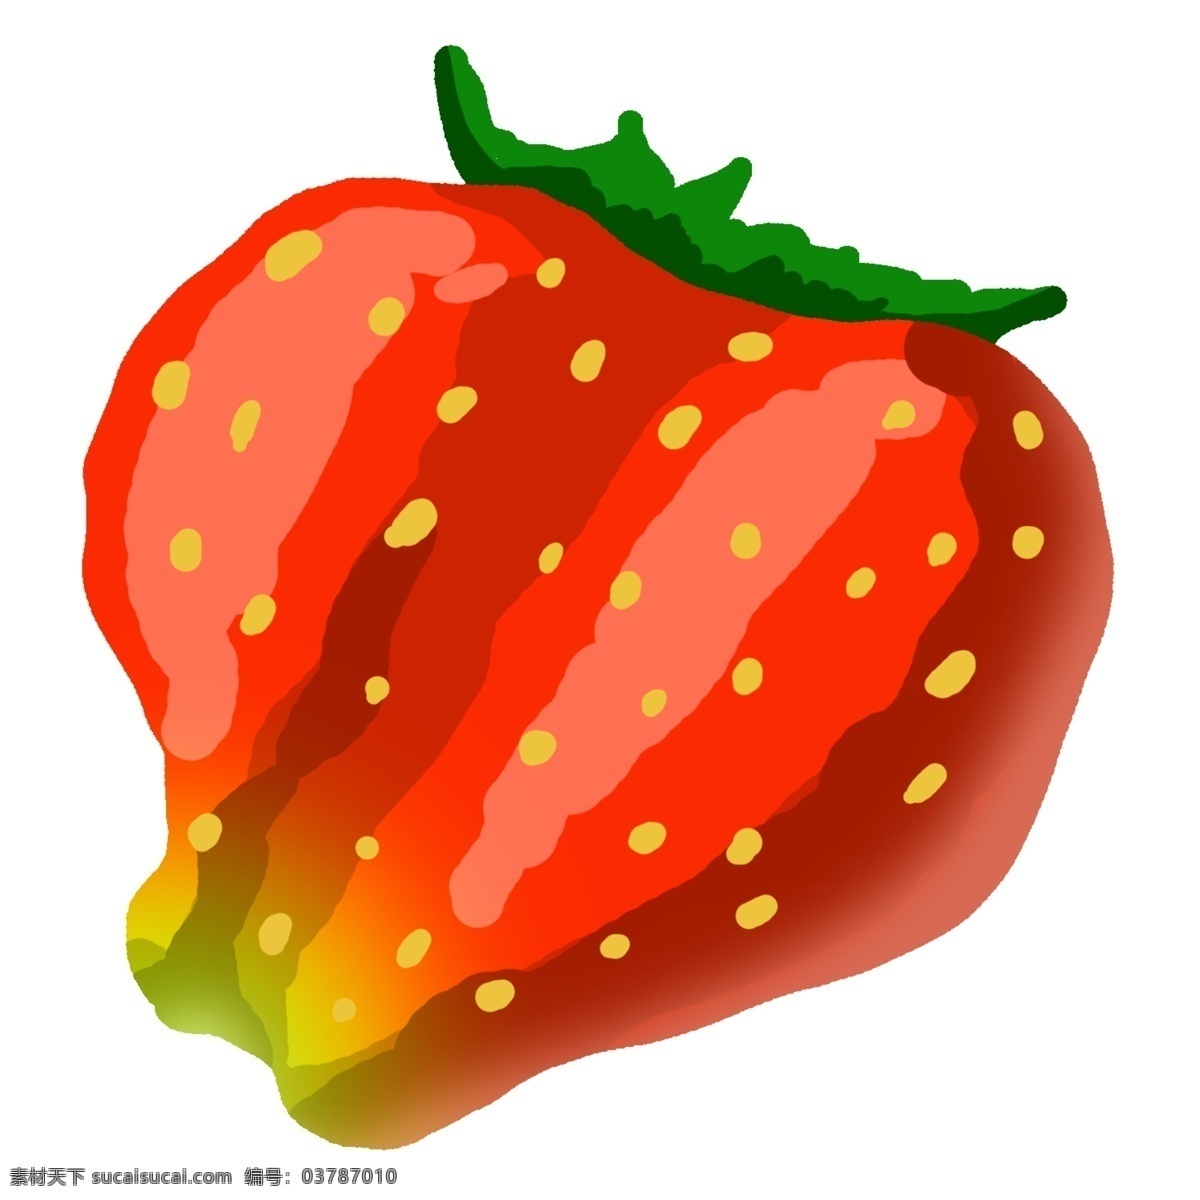 颗 新鲜 草莓 插画 手绘新鲜水果 新鲜草莓 手绘红色草莓 草莓水果插画 美食插画 甜食 食物插画